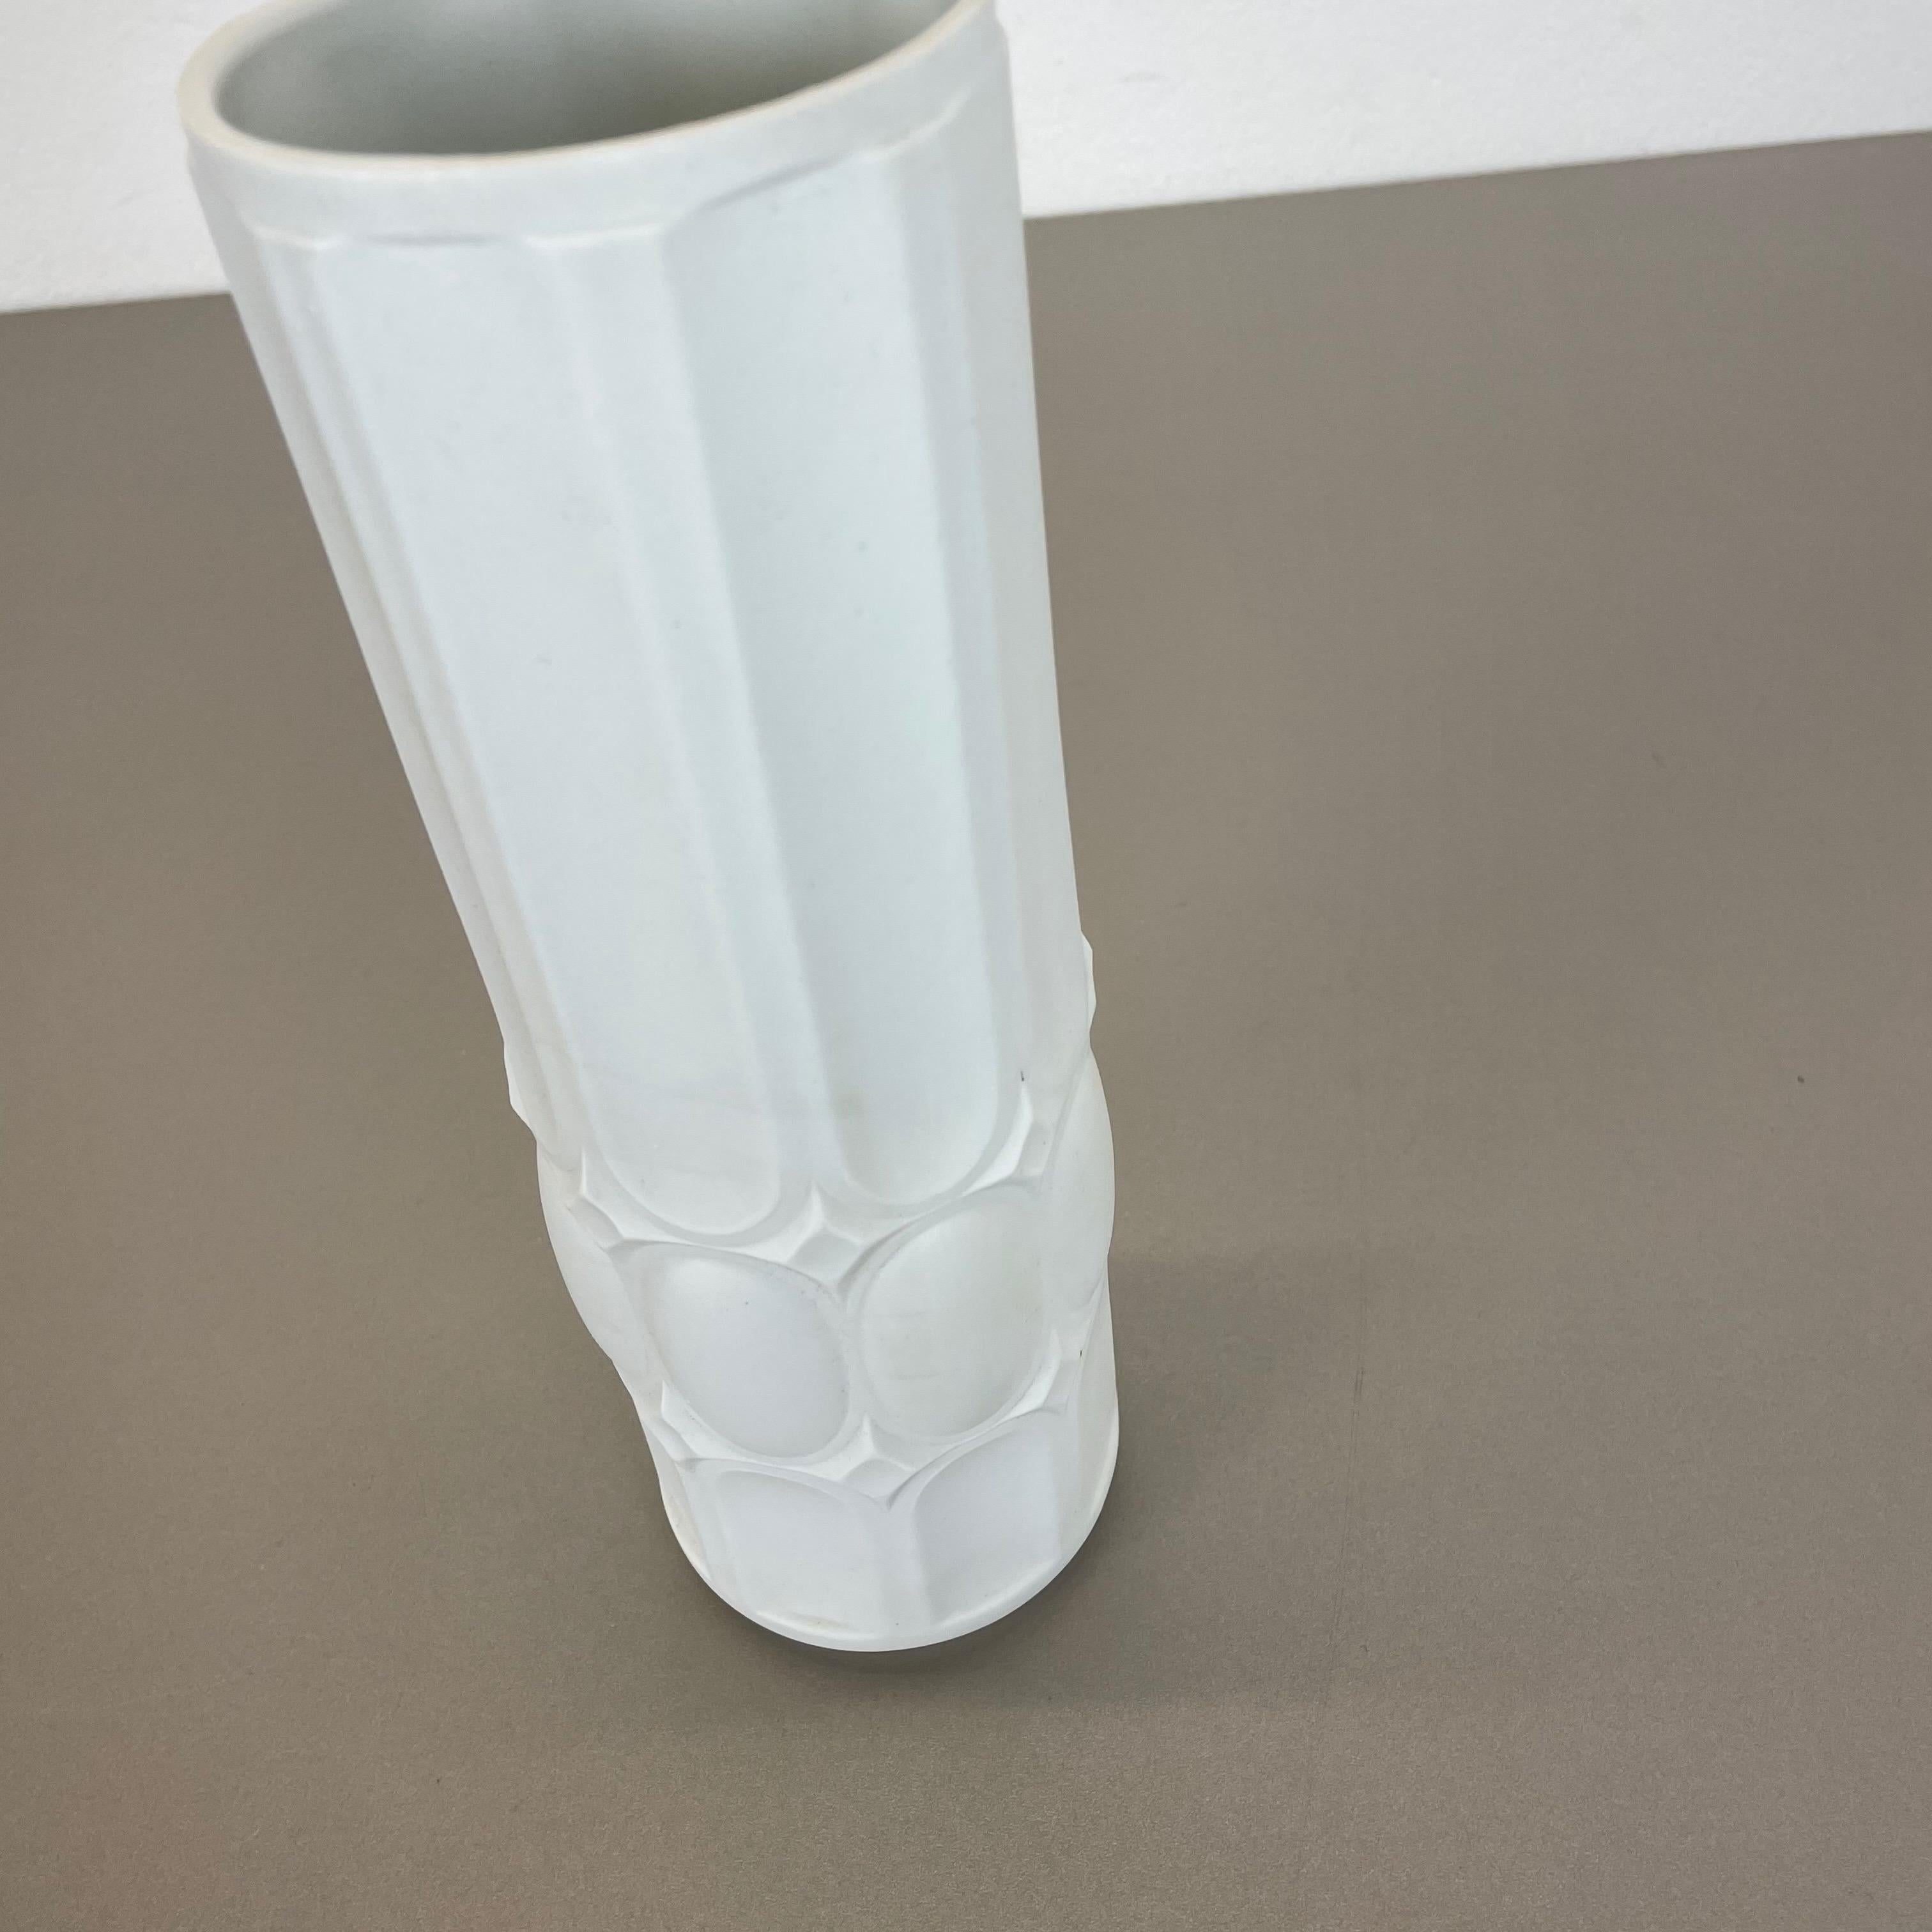 Original Large Porcelain OP Art Vase Made by Royal Bavaria KPM, Germany, 1970s For Sale 6